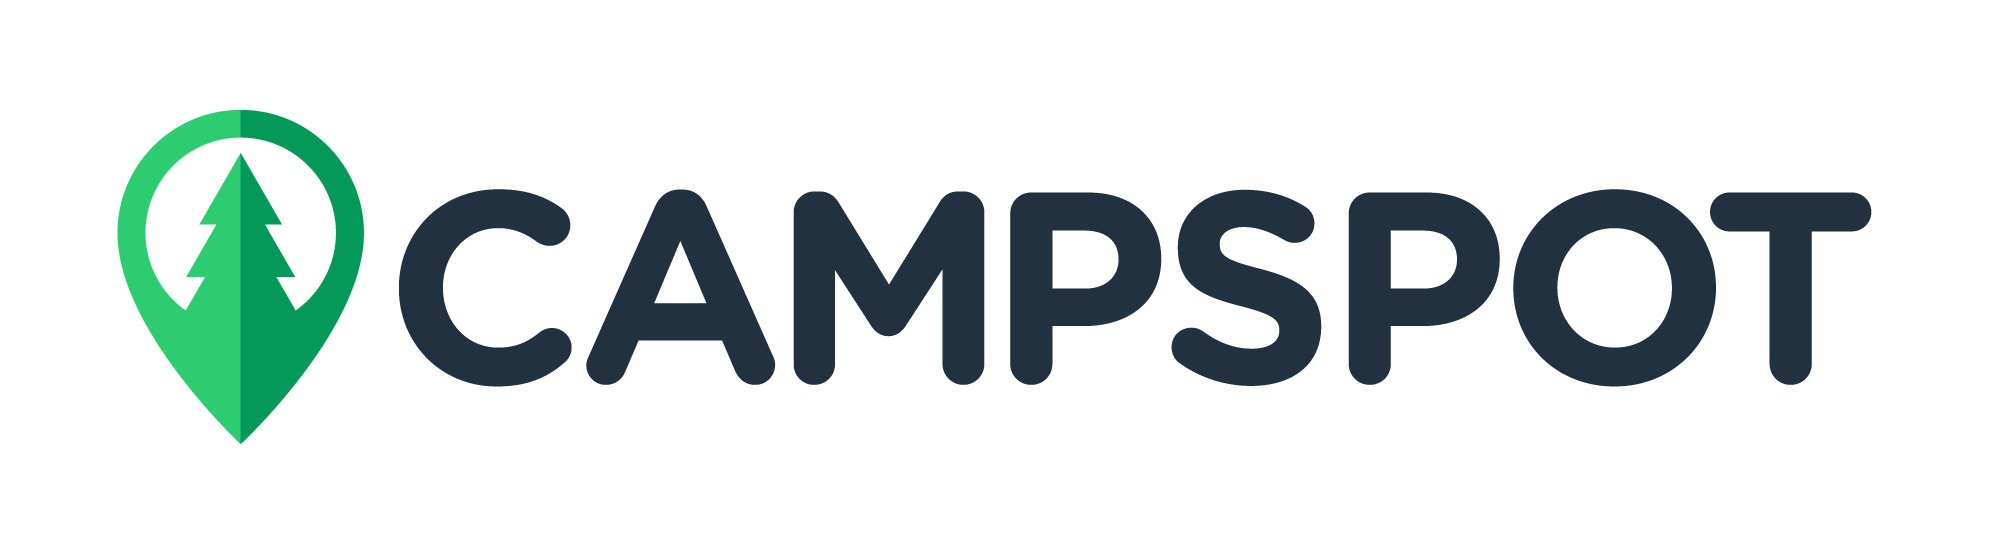 Campspot-logo